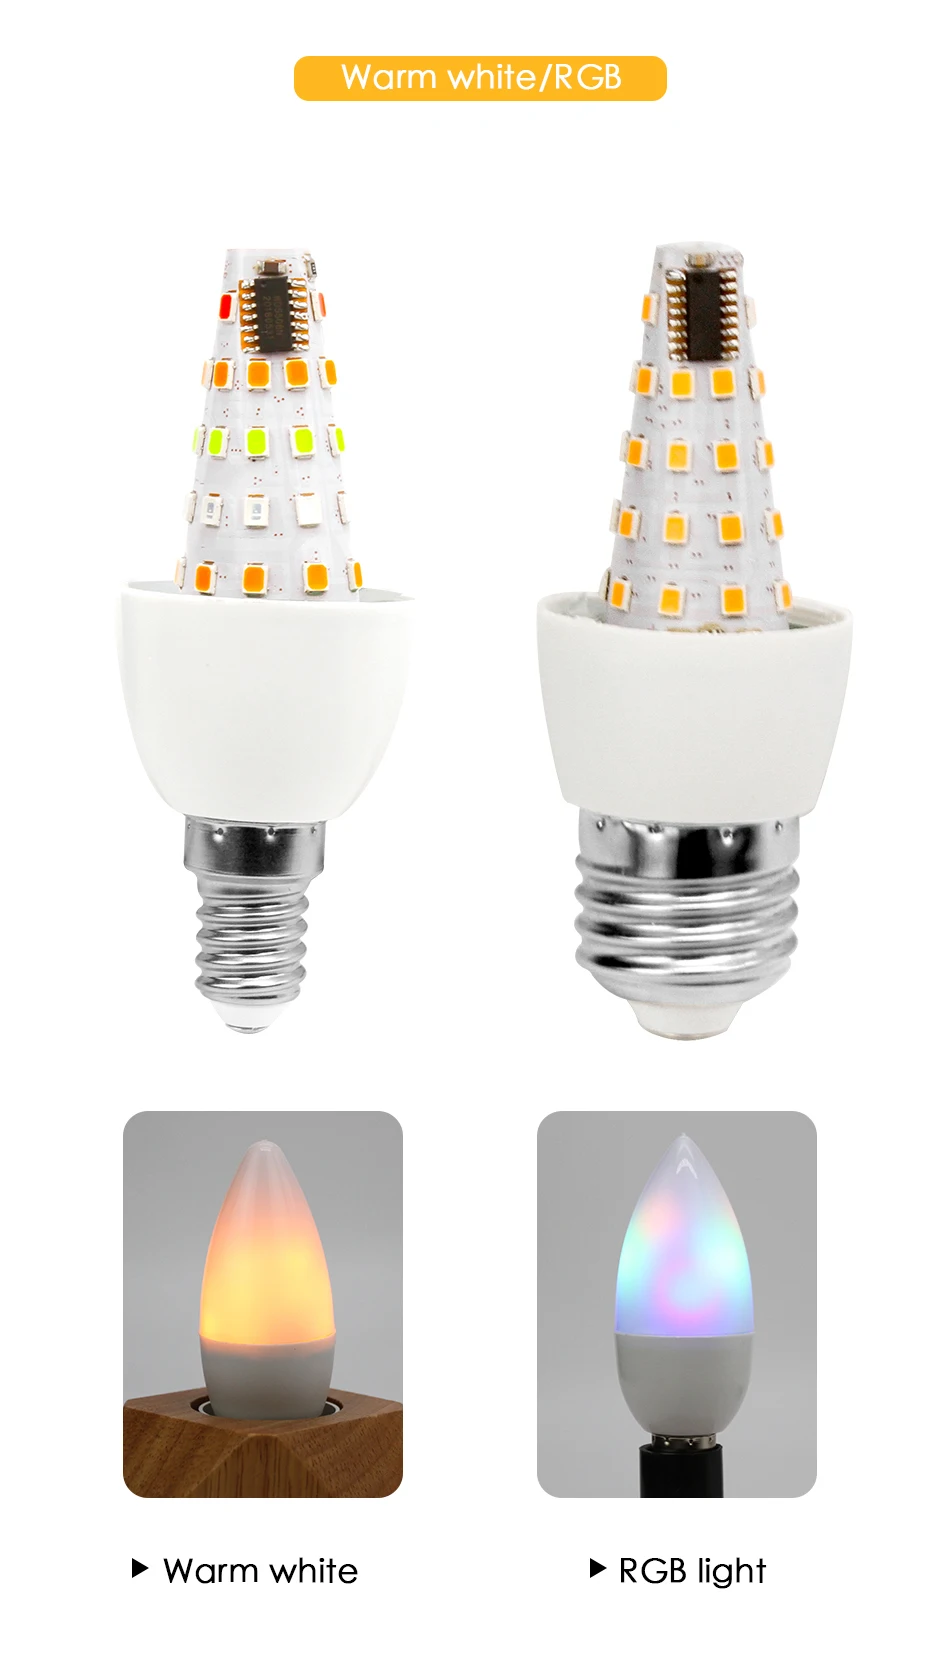 Светодиодный светильник-свеча E27 E14 E12 светодиодный светильник RGB светильник ing Bombillas 3 Вт 110 В 220 В Рождественский креативный светильник s Lamparas